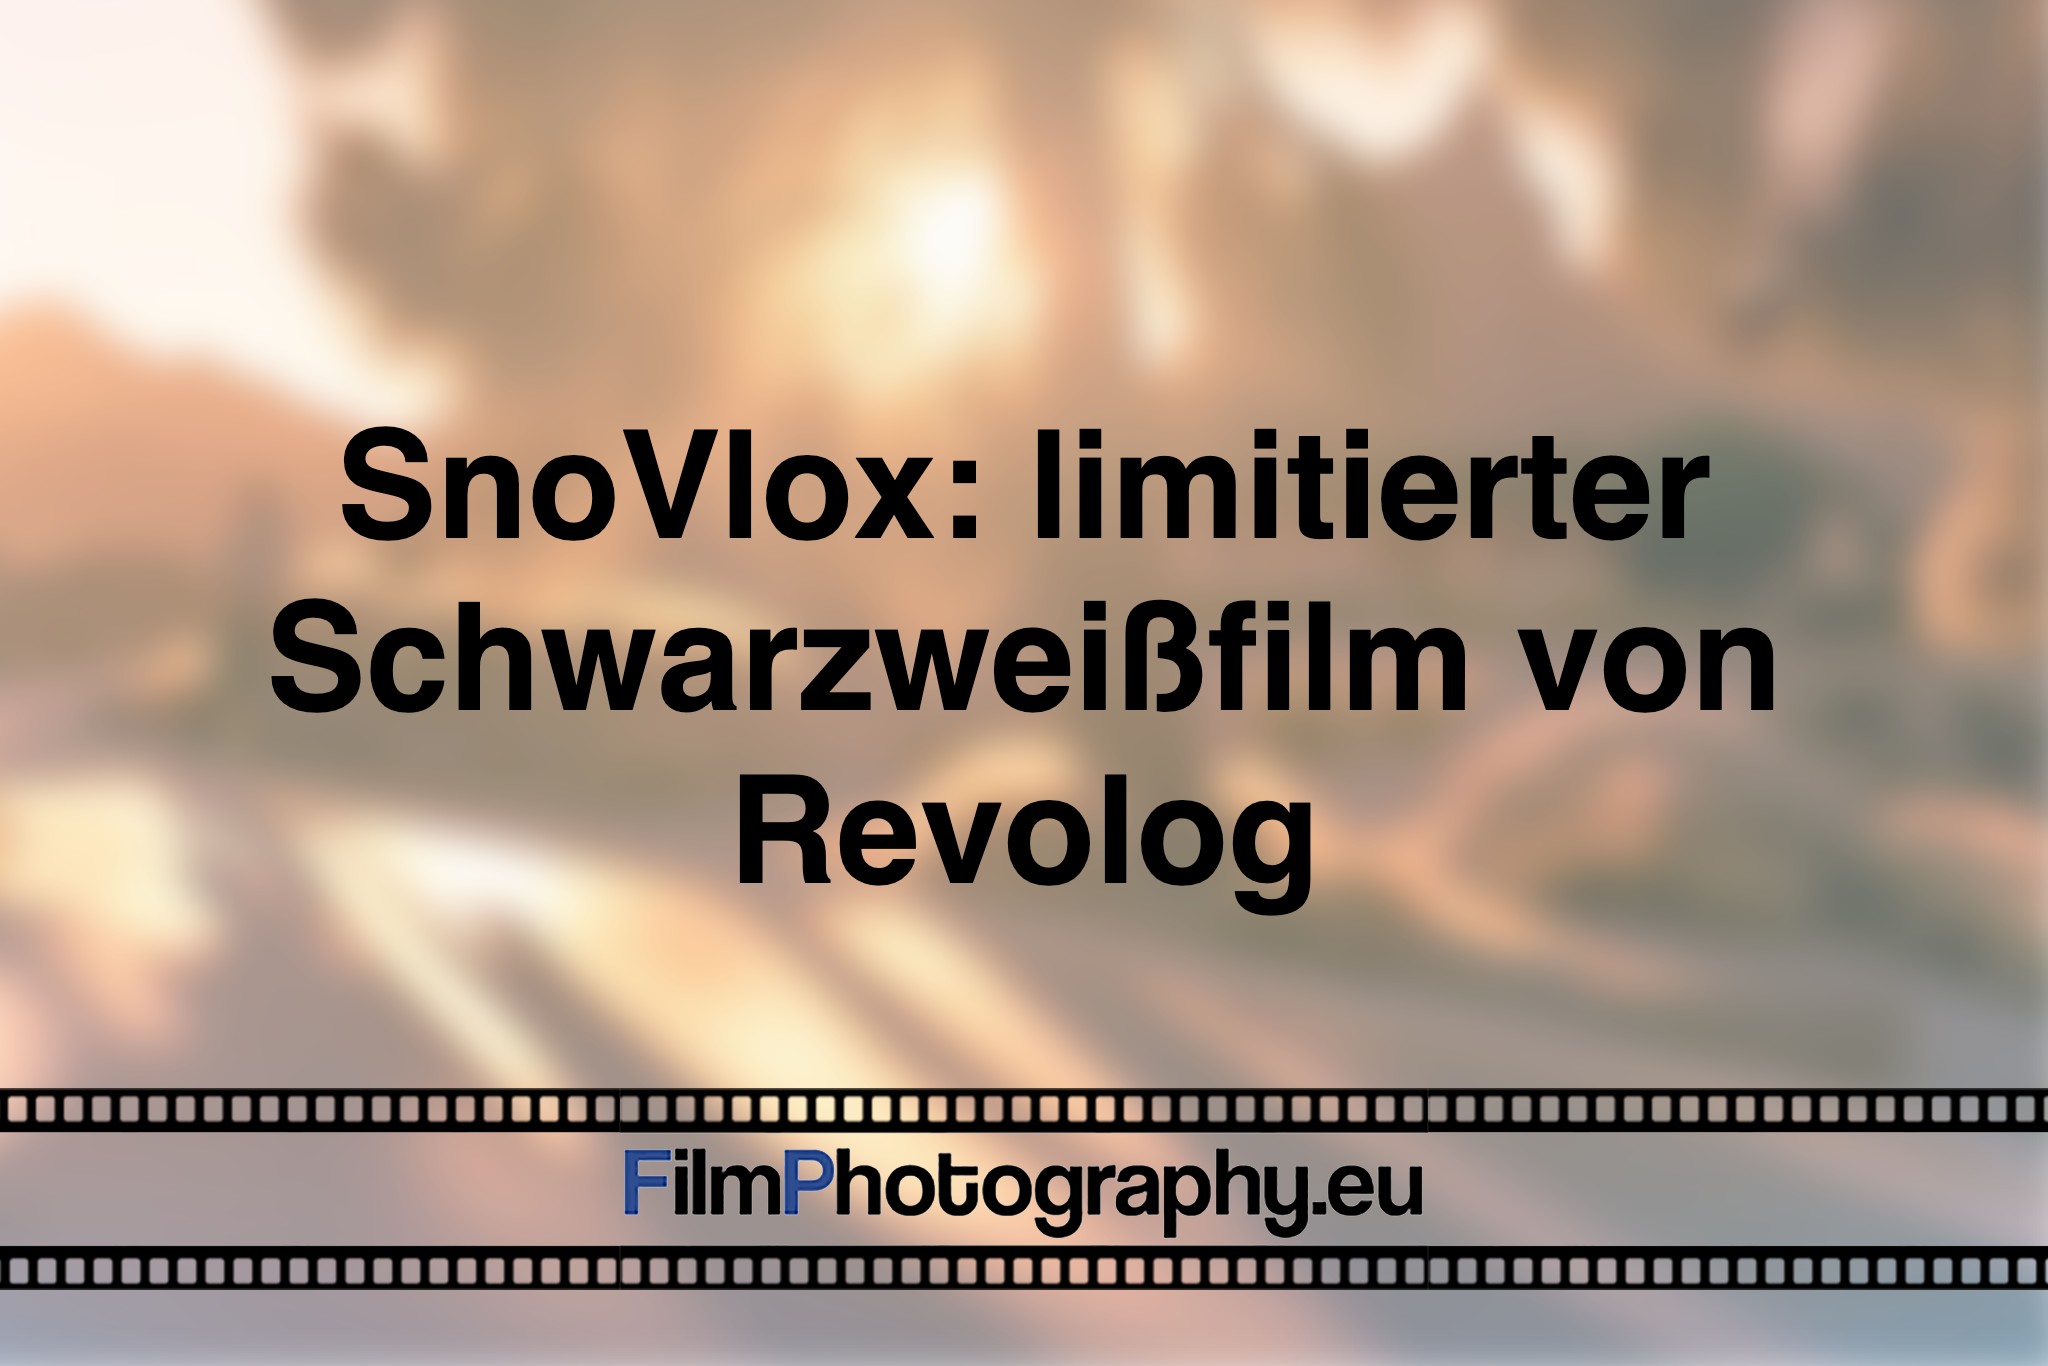 snovlox-limitierter-schwarzweißfilm-von-revolog-foto-bnv